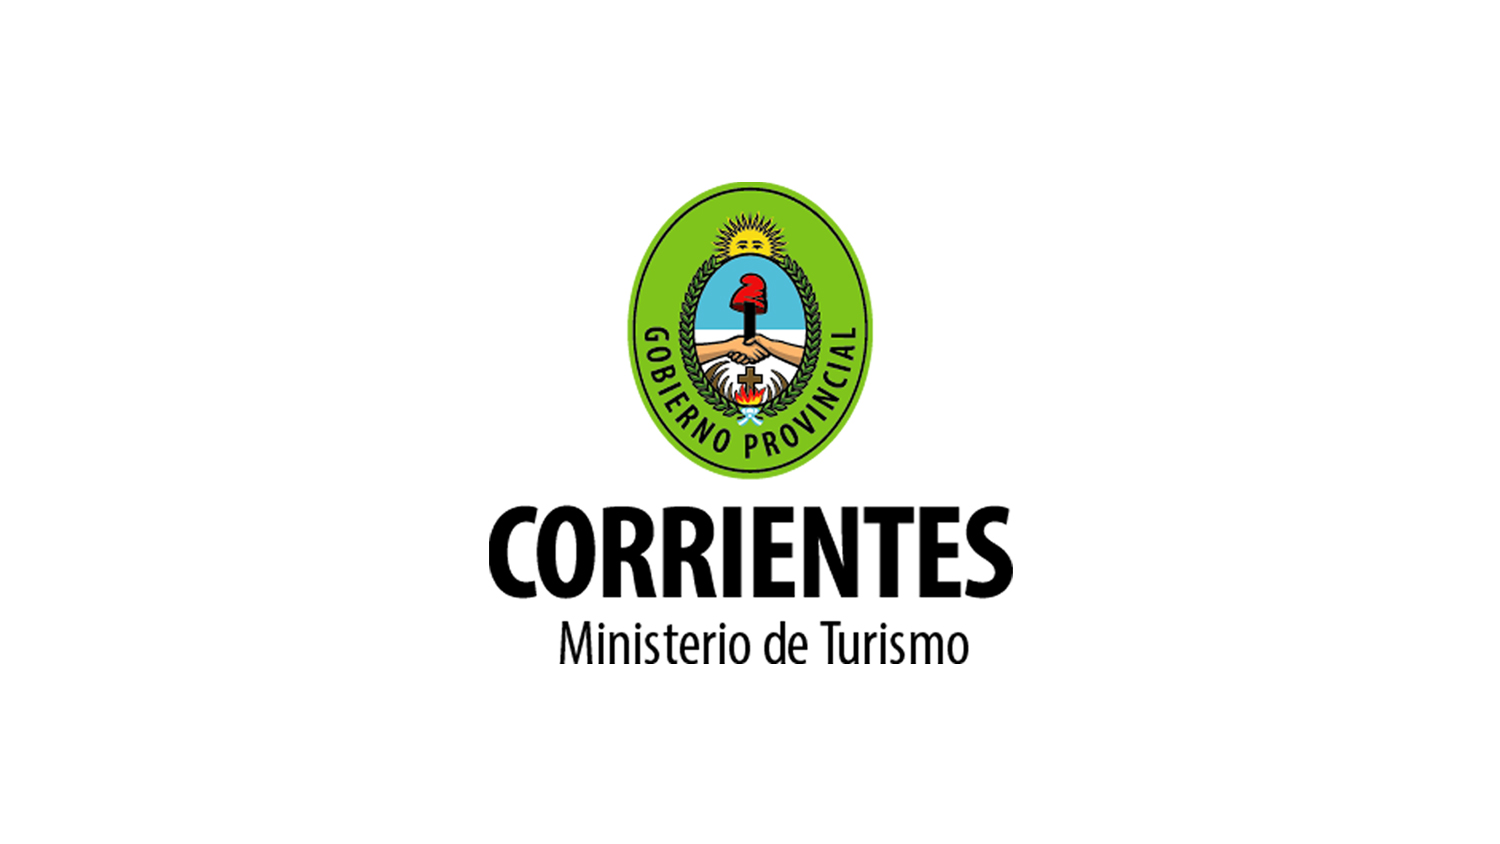 Corrientes – Ministerio de Turismo